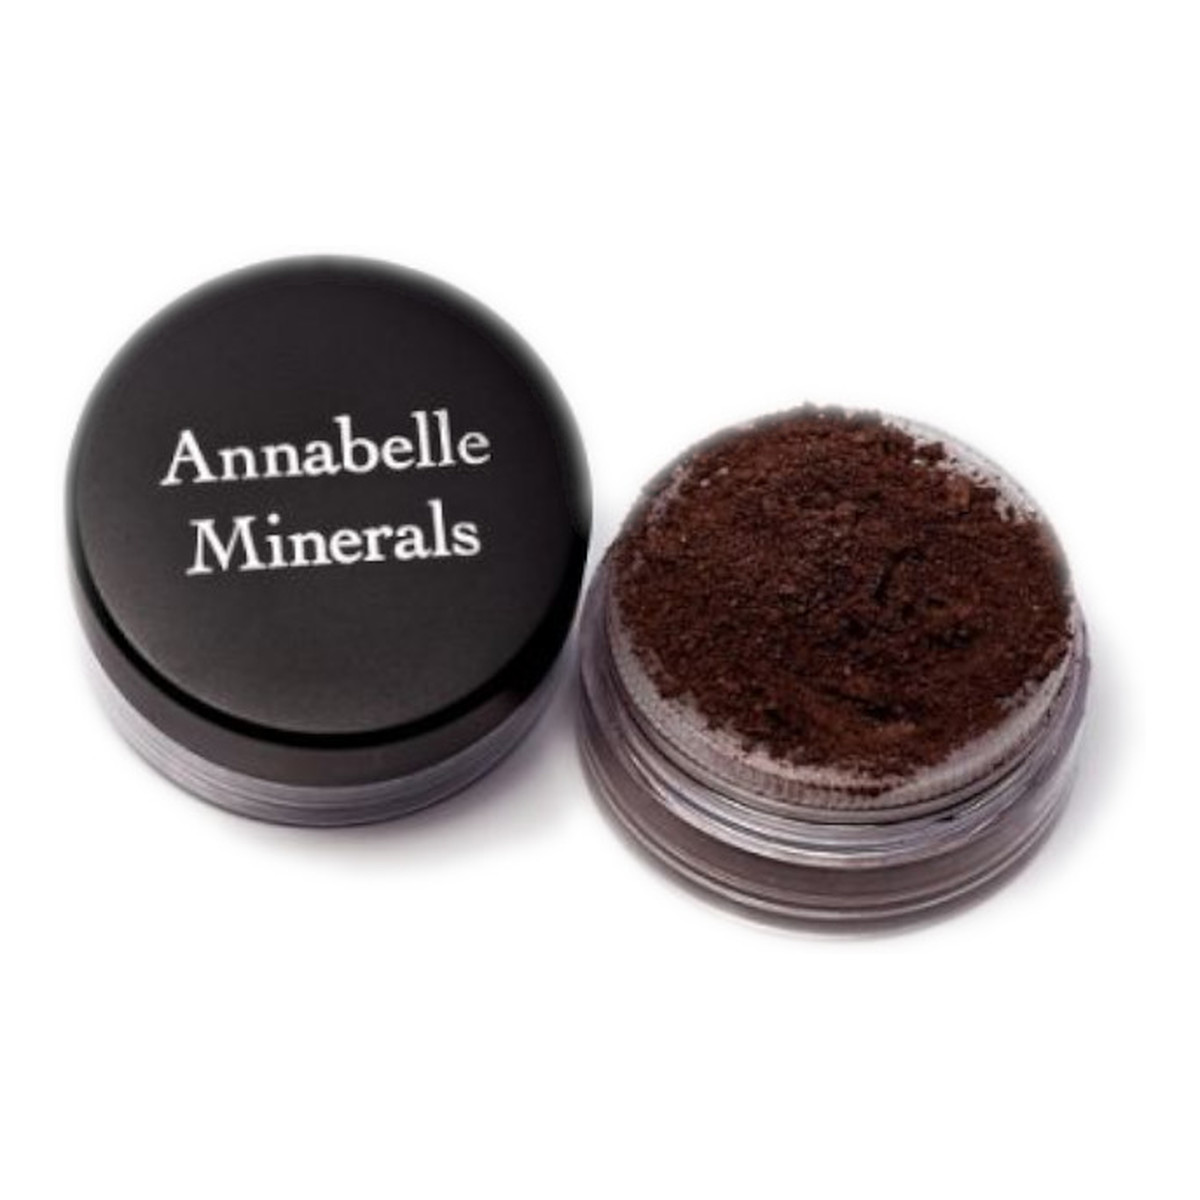 Annabelle Minerals Cień mineralny 3g